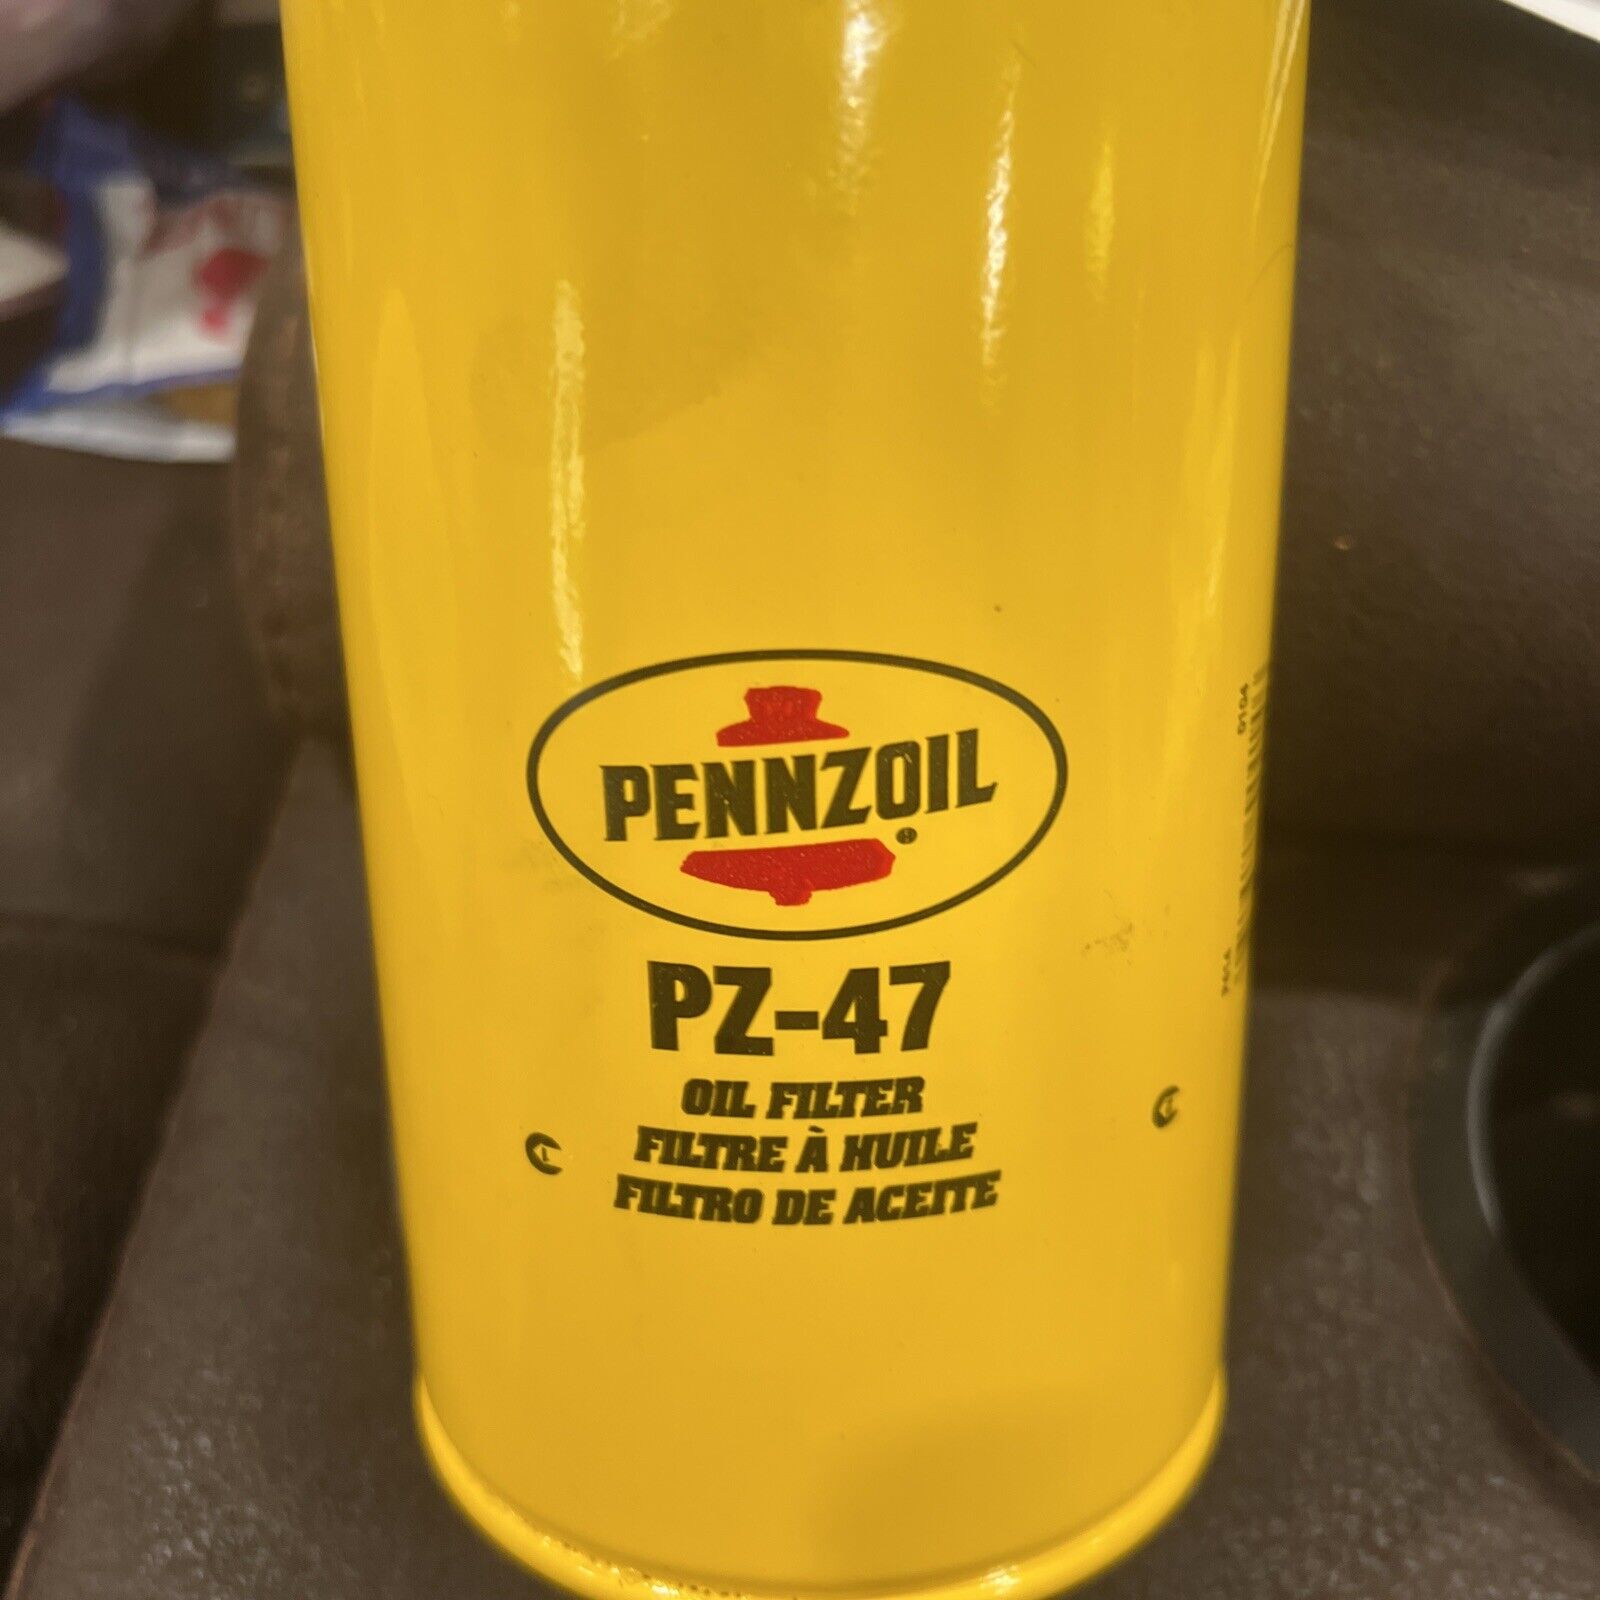 PENNZOIL PZ-47 OIL FILTER No Plastic Wrap New